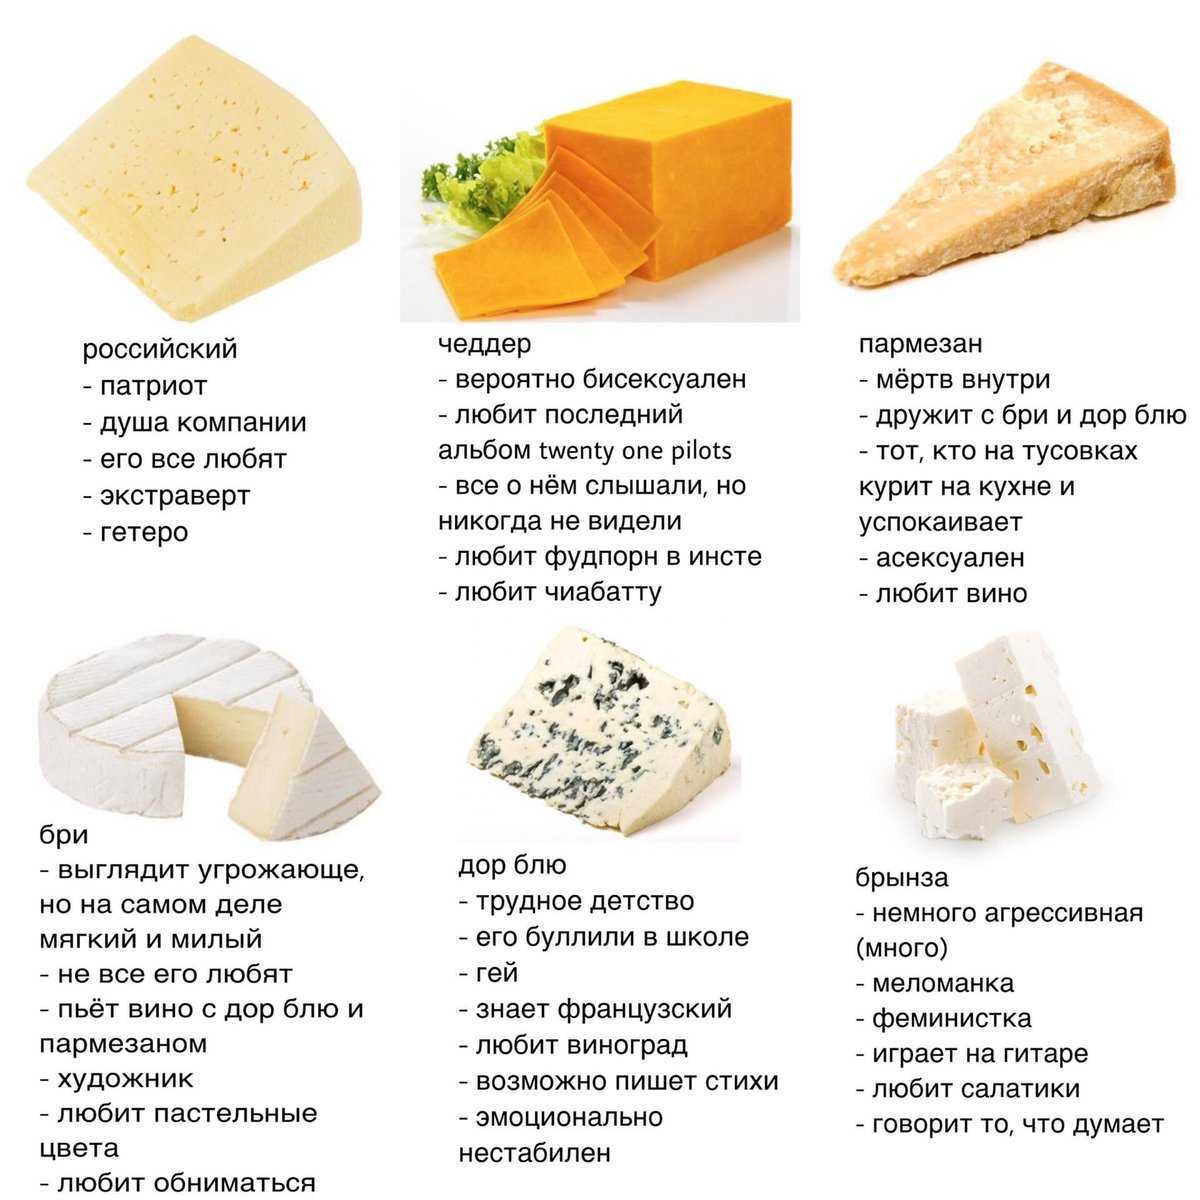 Лучшие cыры франции и италии. технология изготовления сыров